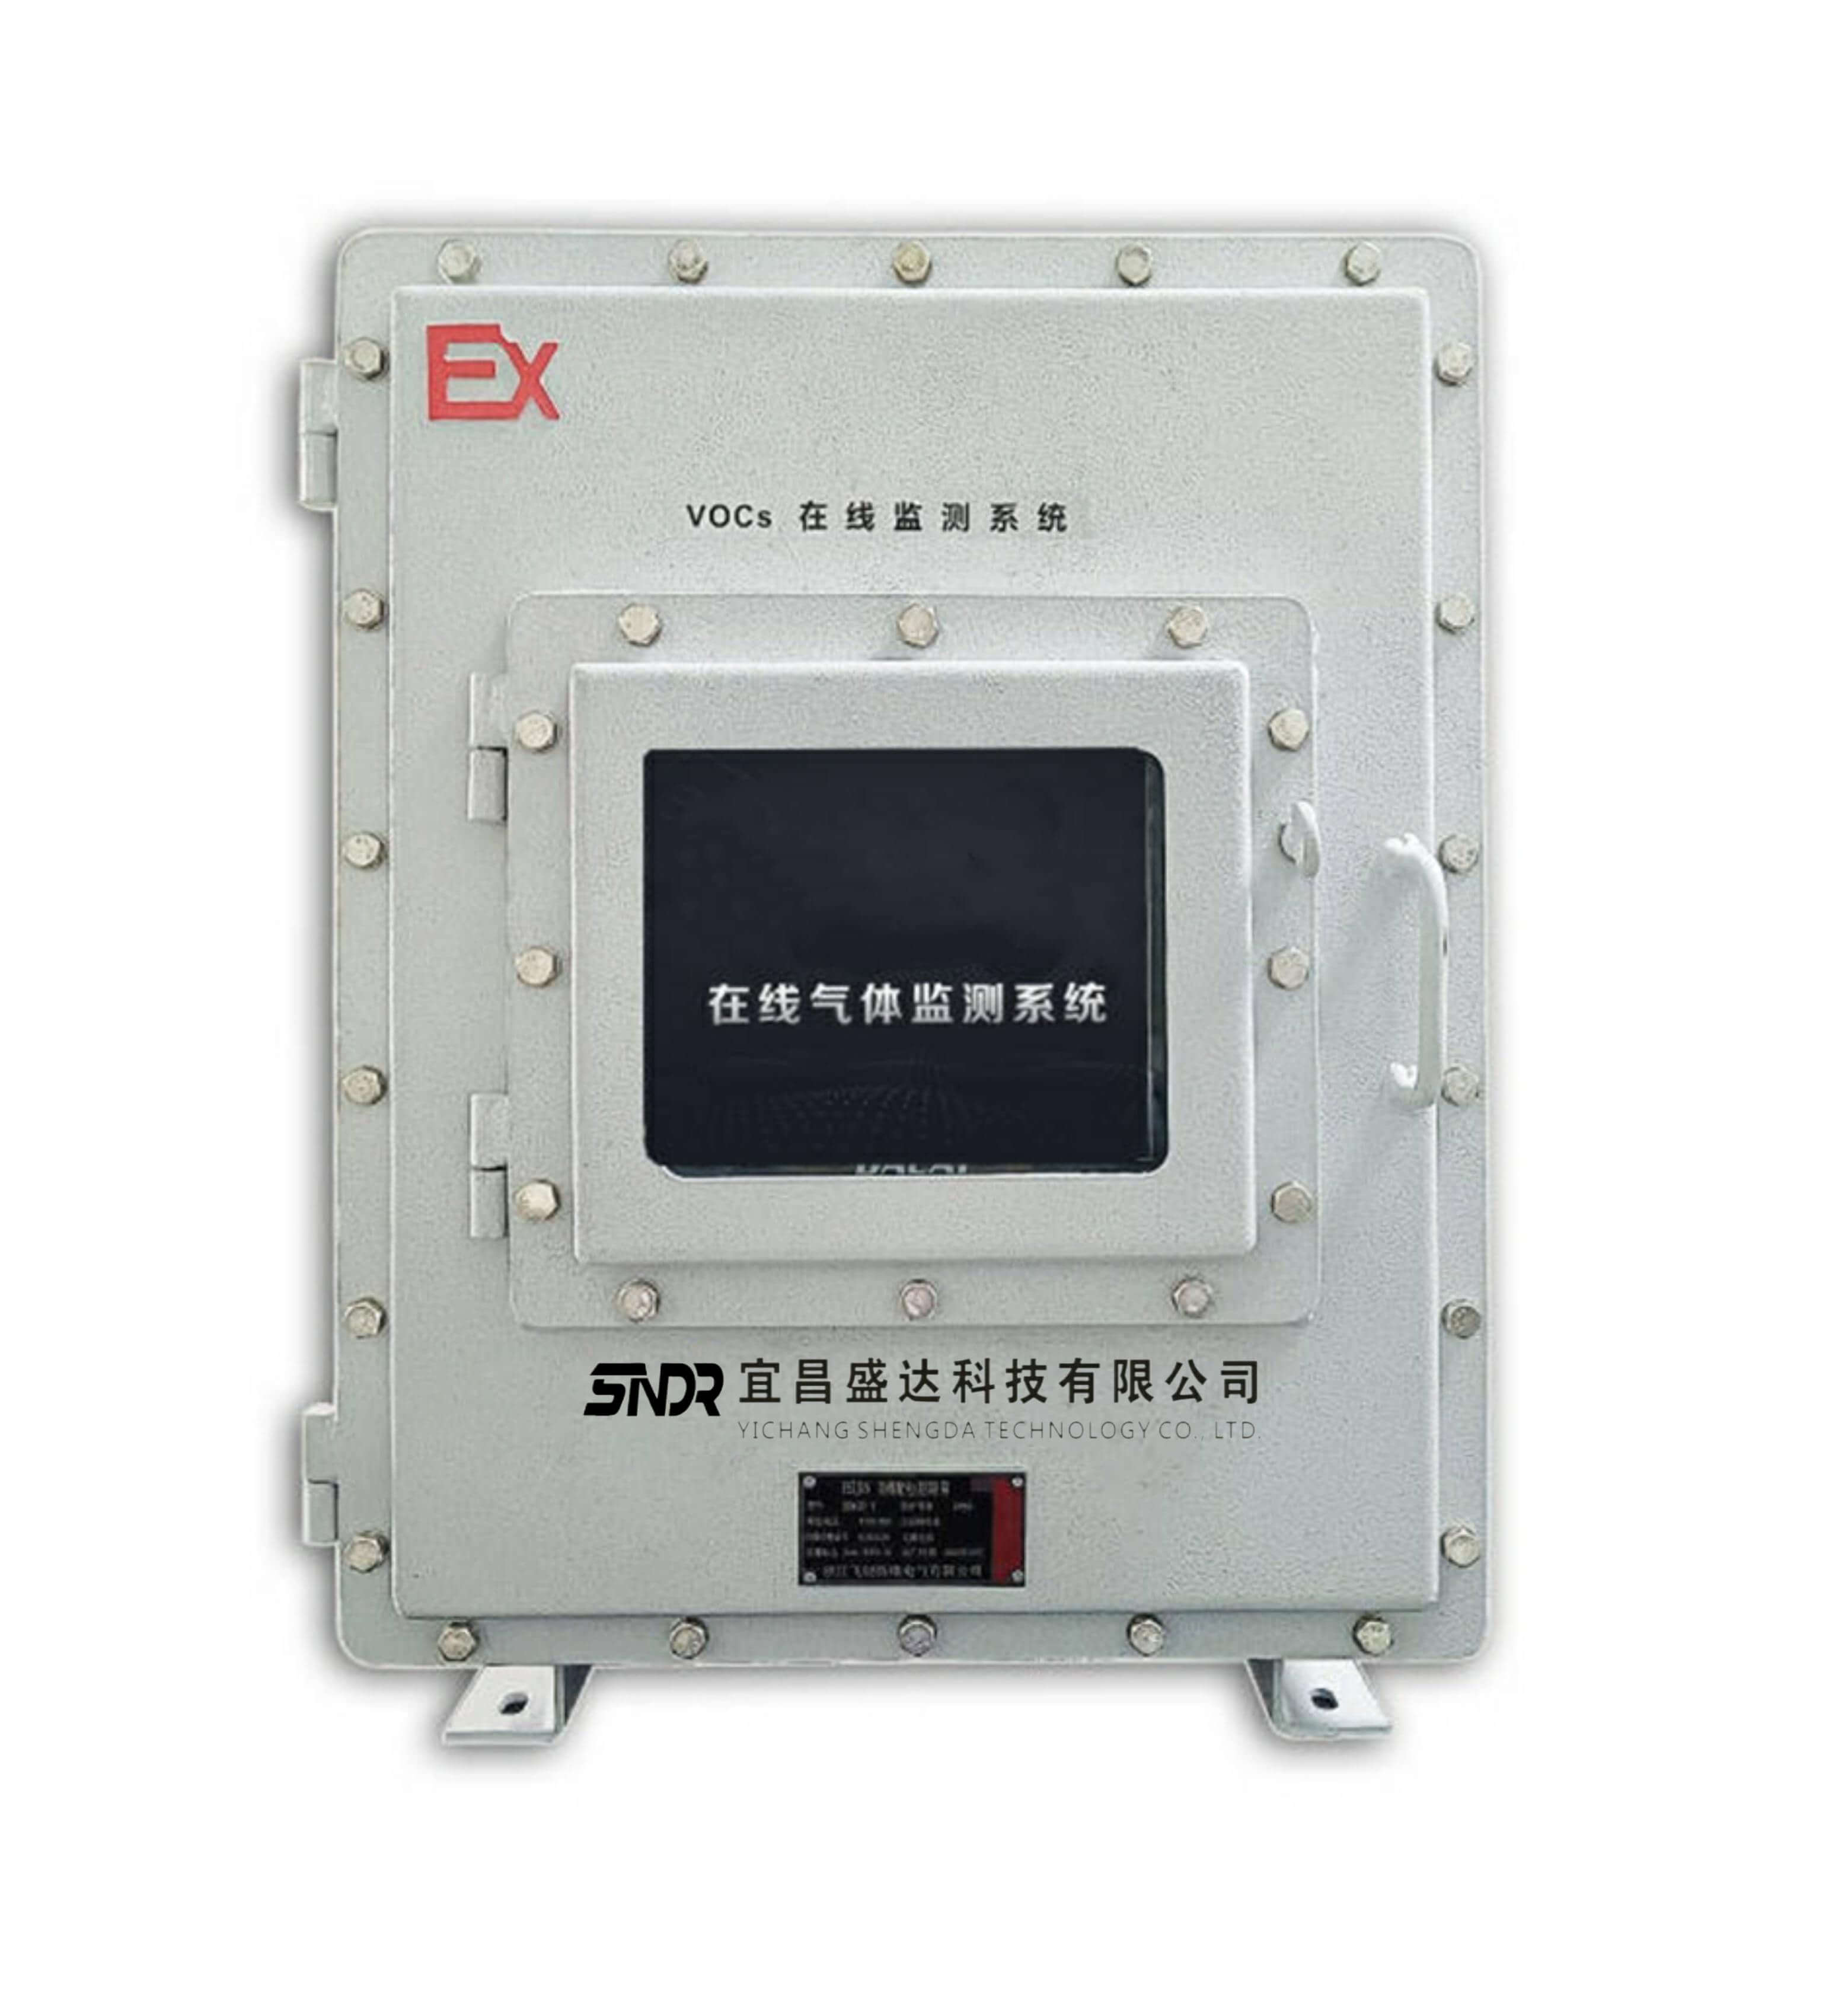 宜昌盛达科技SD-MON-VOC-Ex防爆VOC在线监测仪